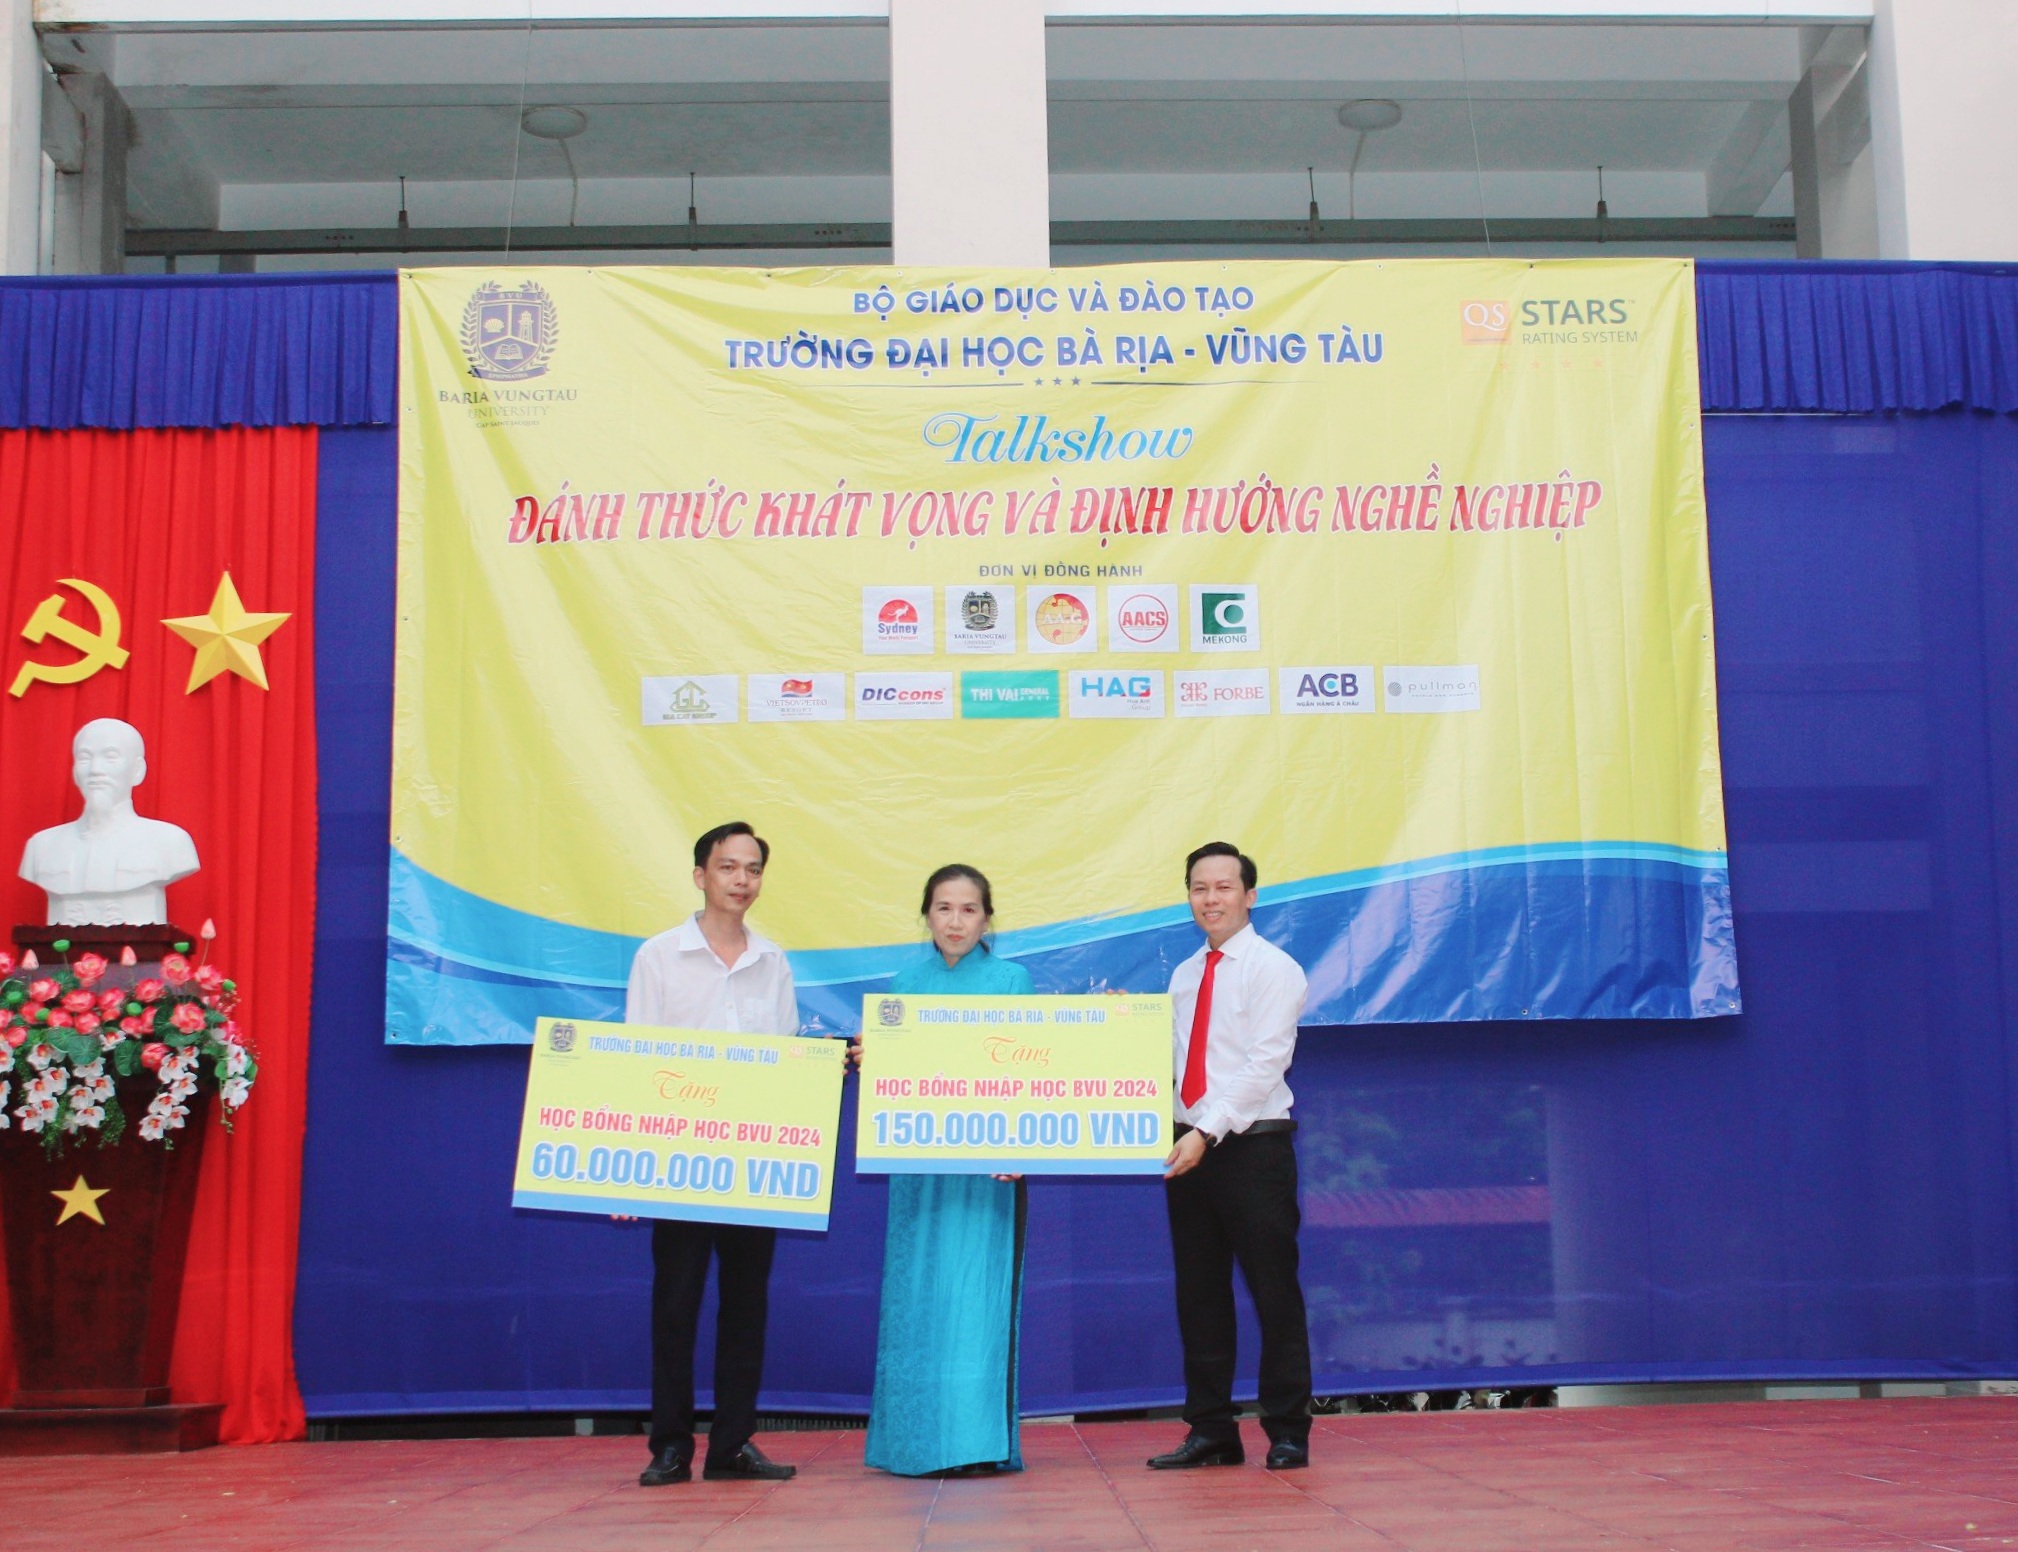 Trường ĐH Bà Rịa – Vũng Tàu trao học bổng nhập học tặng 50% học phí học kỳ 1 cho Trường THPT Trần Phú và Trường Phổ thông Dân tộc nội trú tỉnh.